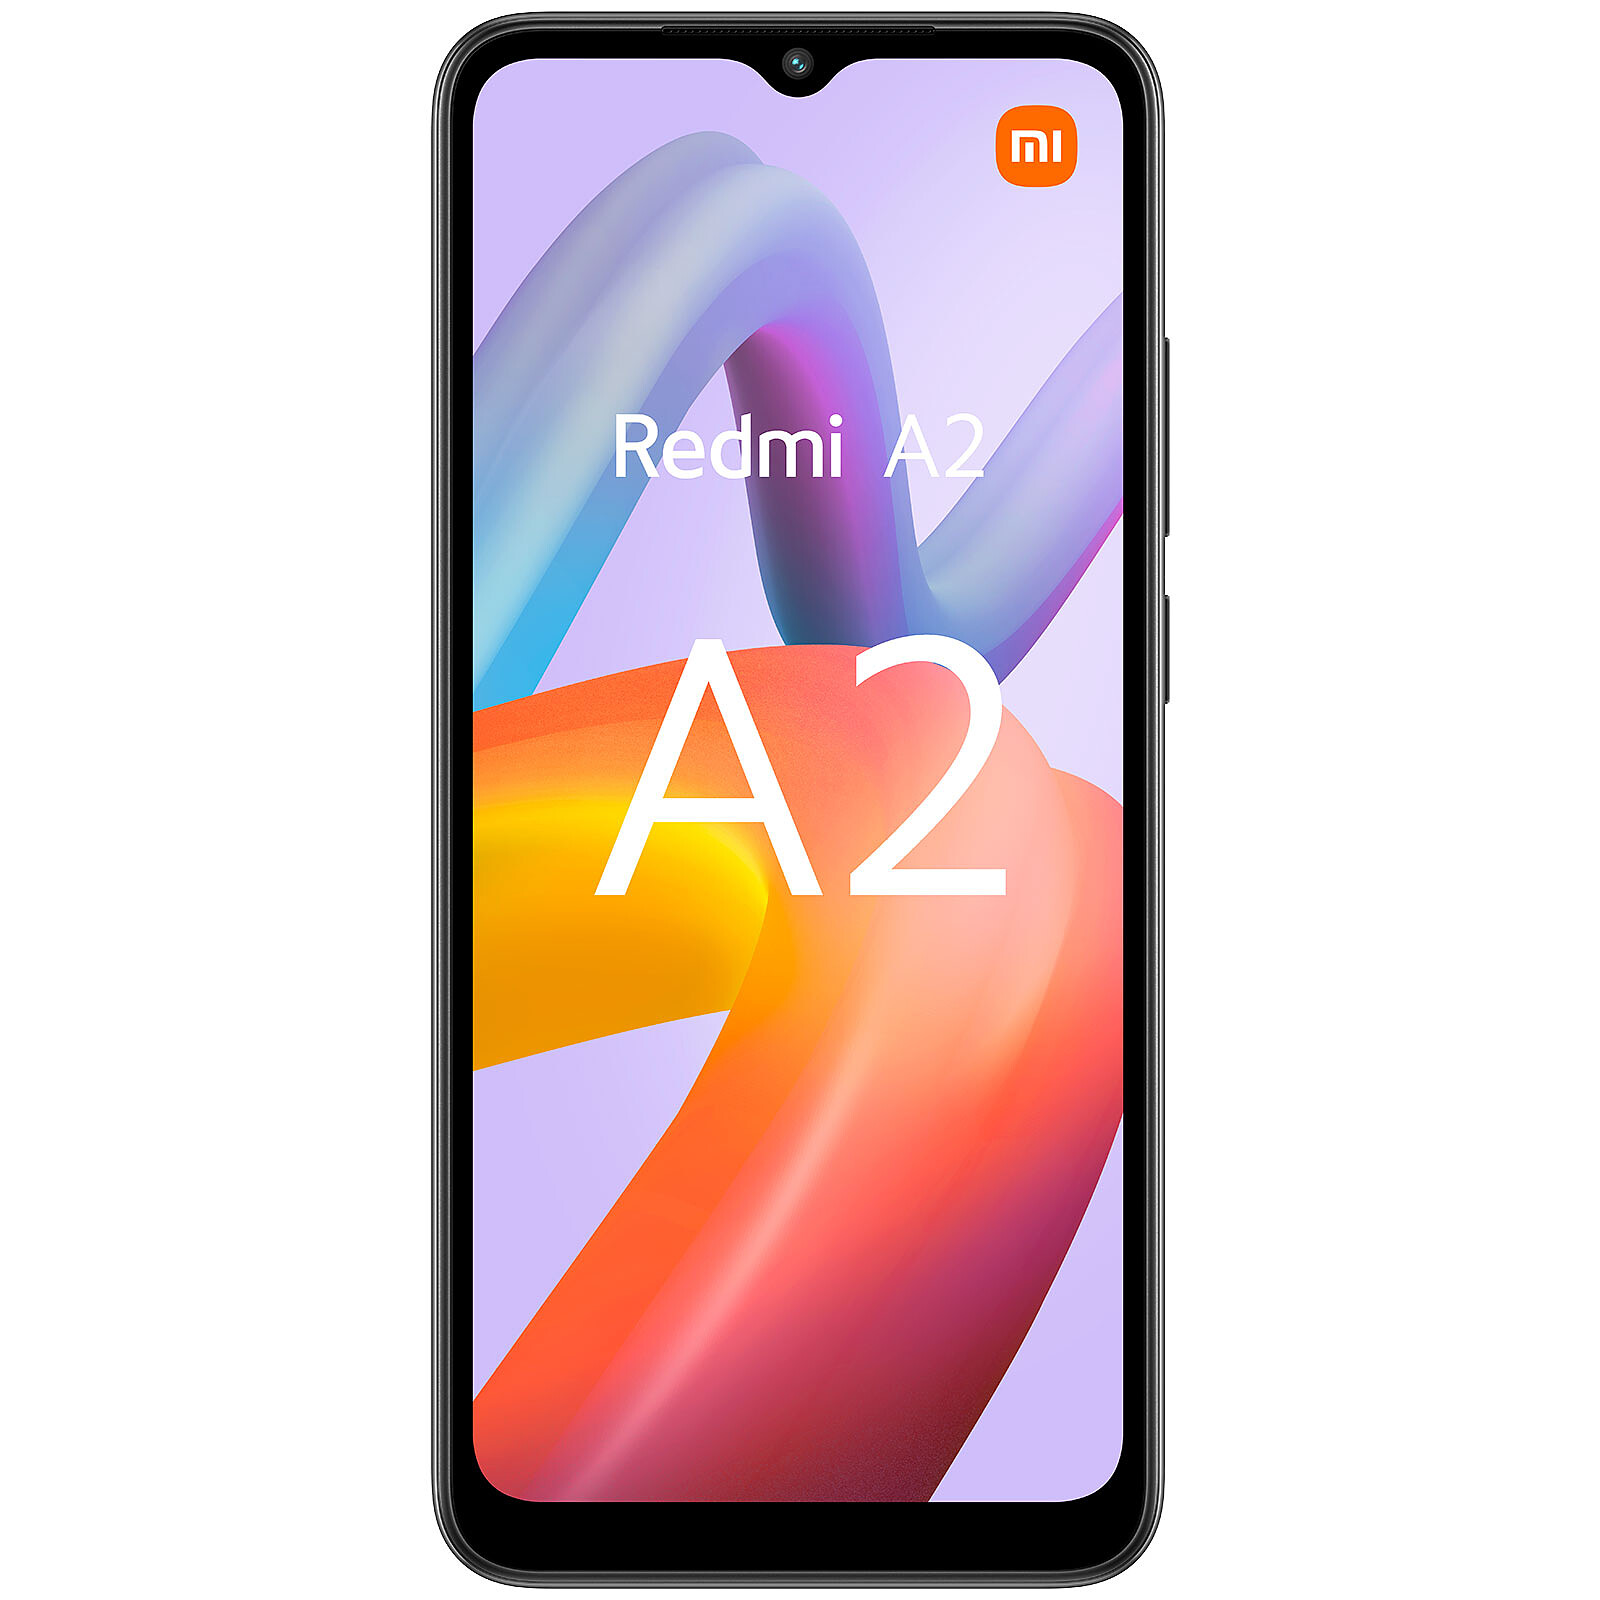 Xiaomi Mi A2 características, ficha técnica y precio